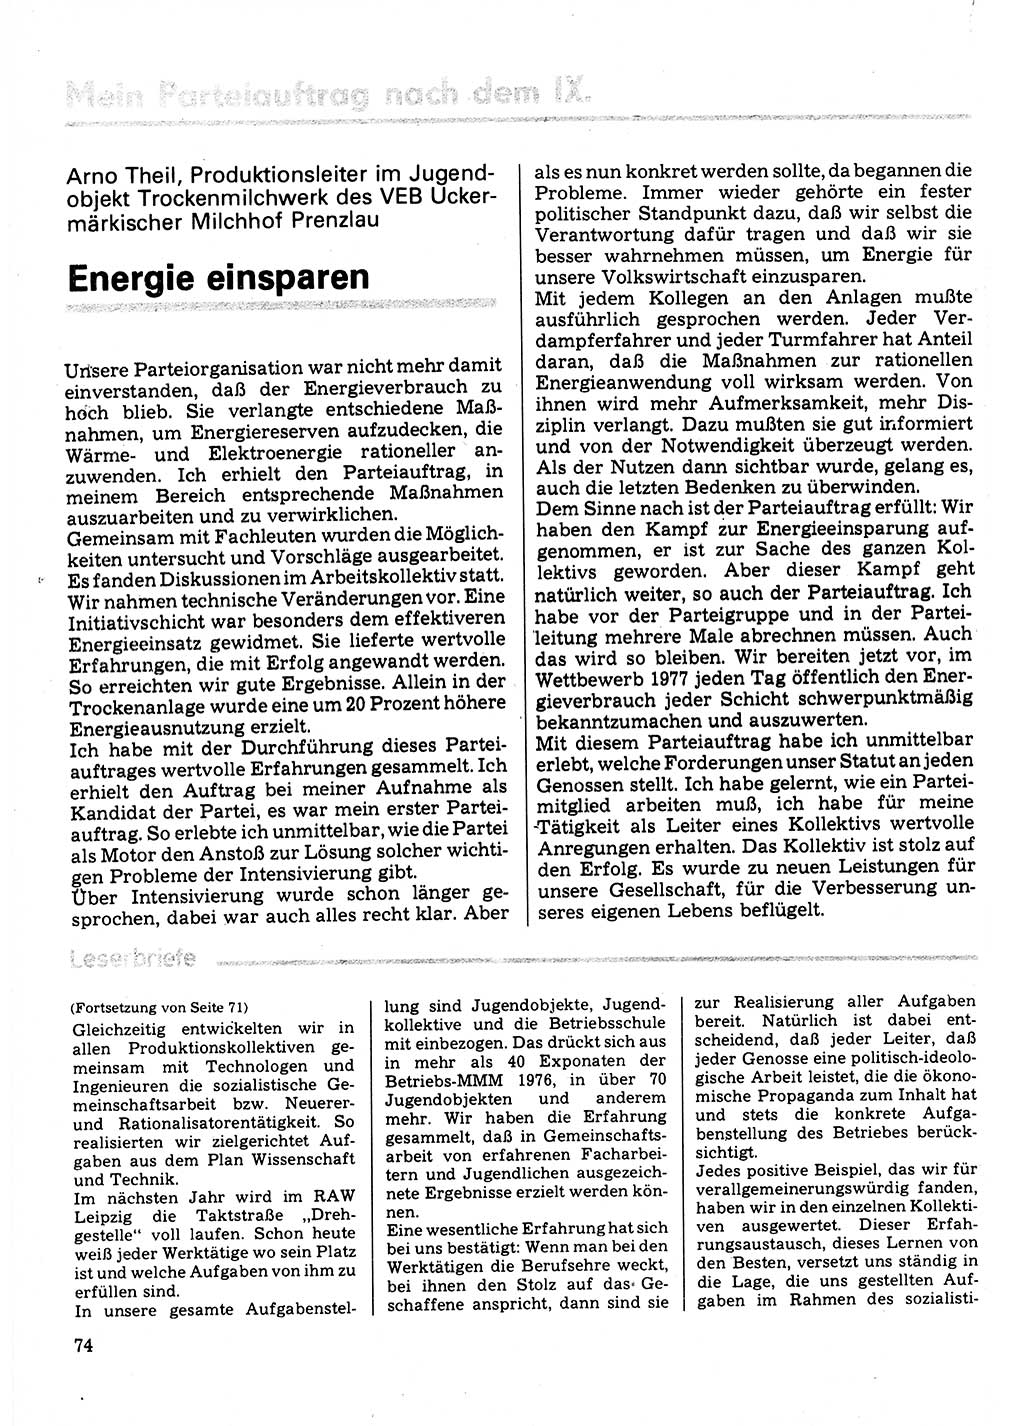 Neuer Weg (NW), Organ des Zentralkomitees (ZK) der SED (Sozialistische Einheitspartei Deutschlands) für Fragen des Parteilebens, 32. Jahrgang [Deutsche Demokratische Republik (DDR)] 1977, Seite 74 (NW ZK SED DDR 1977, S. 74)